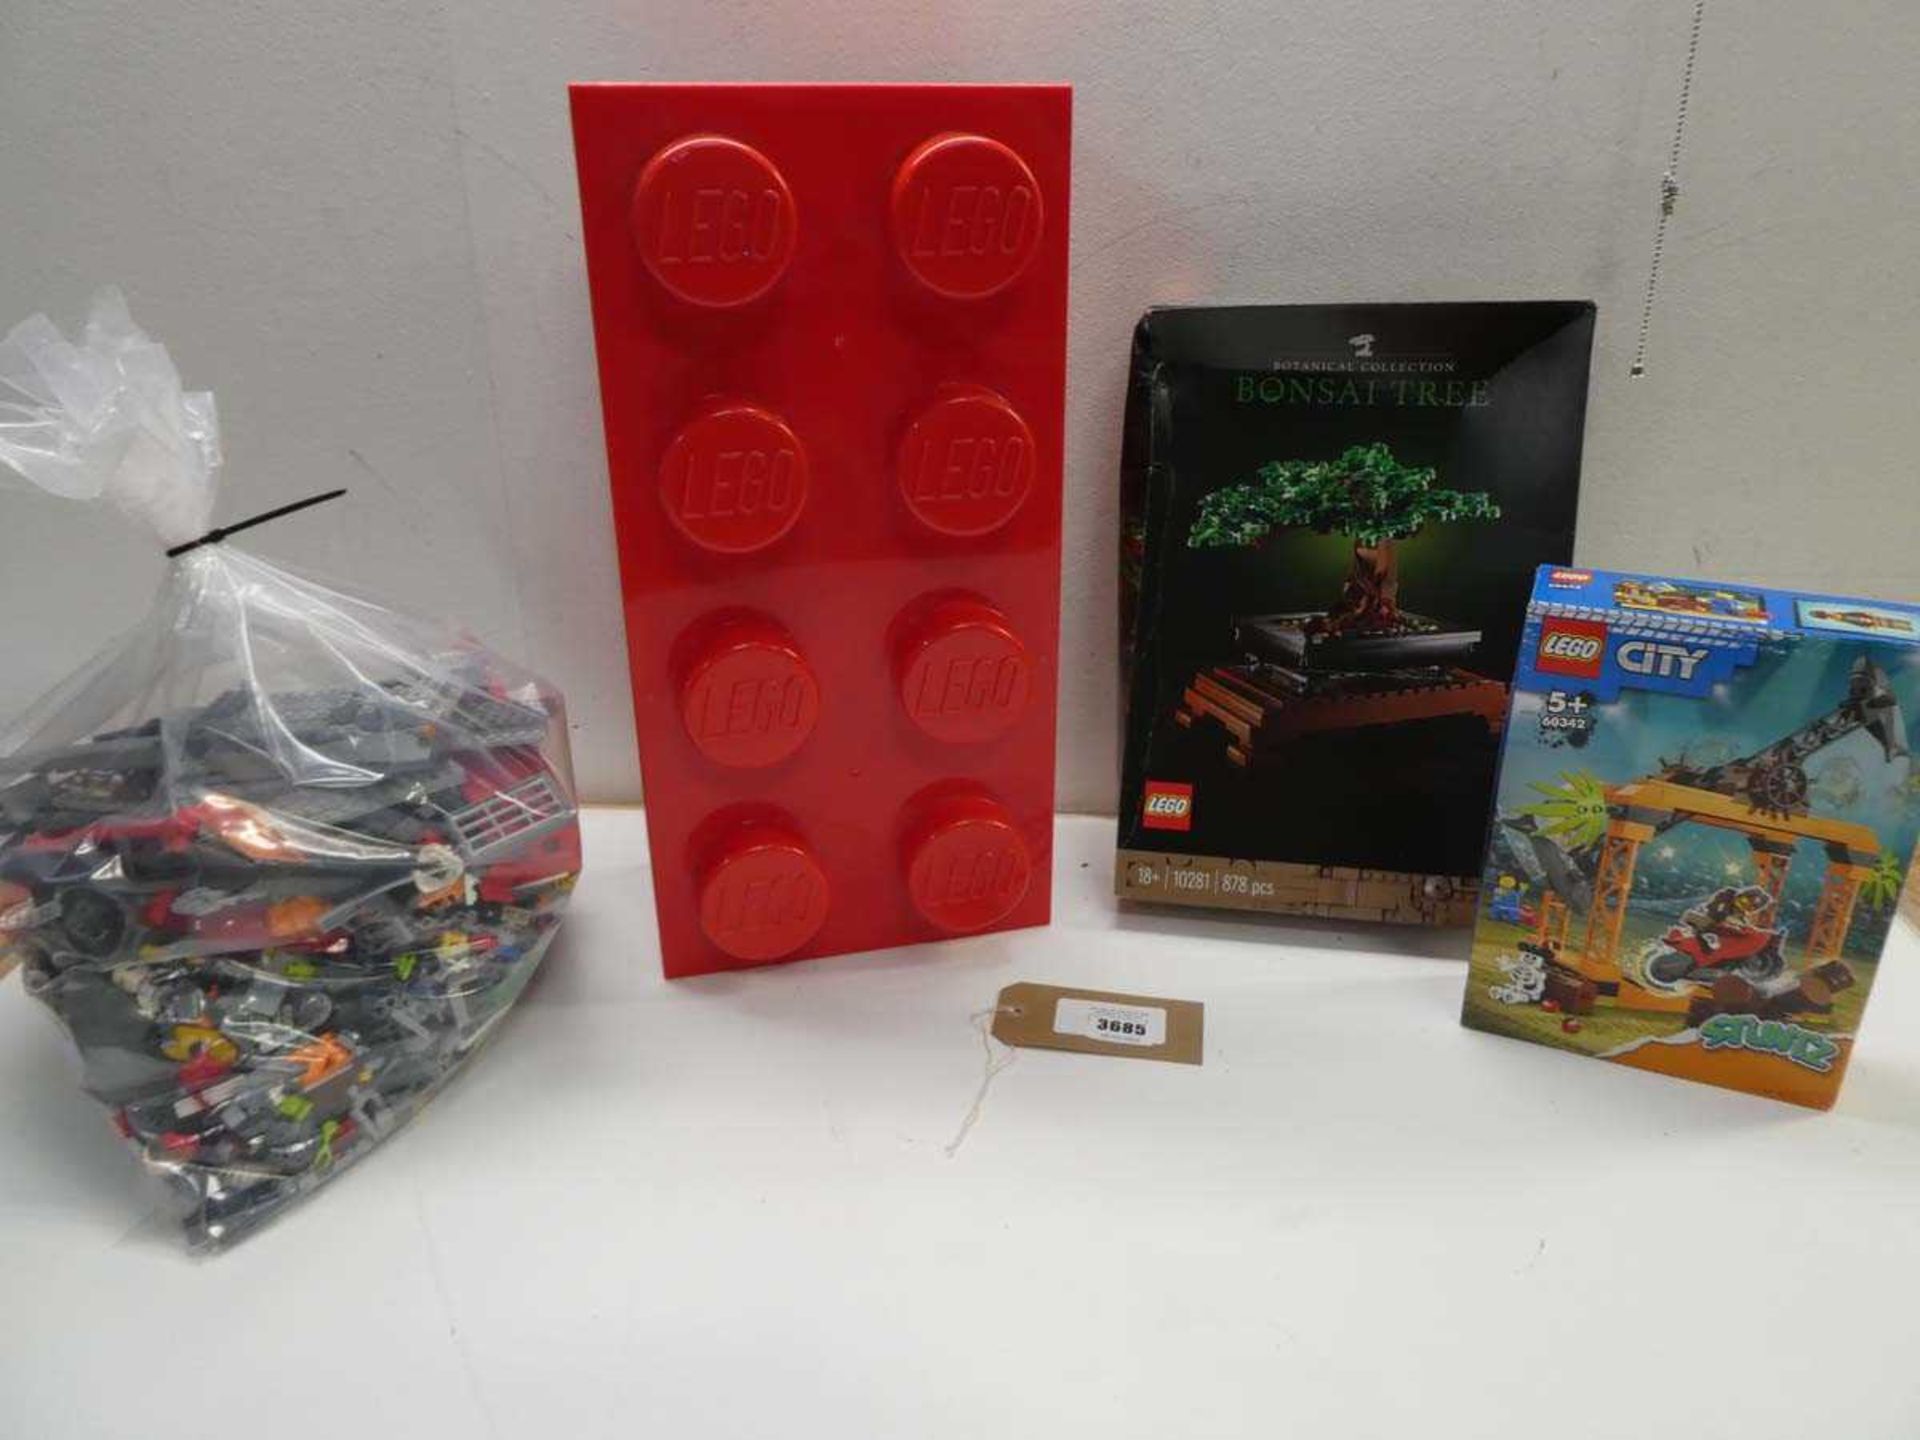 +VAT Lego Bonsai Tree & City model kits, large bag of loose Lego and large Lego brick storage box